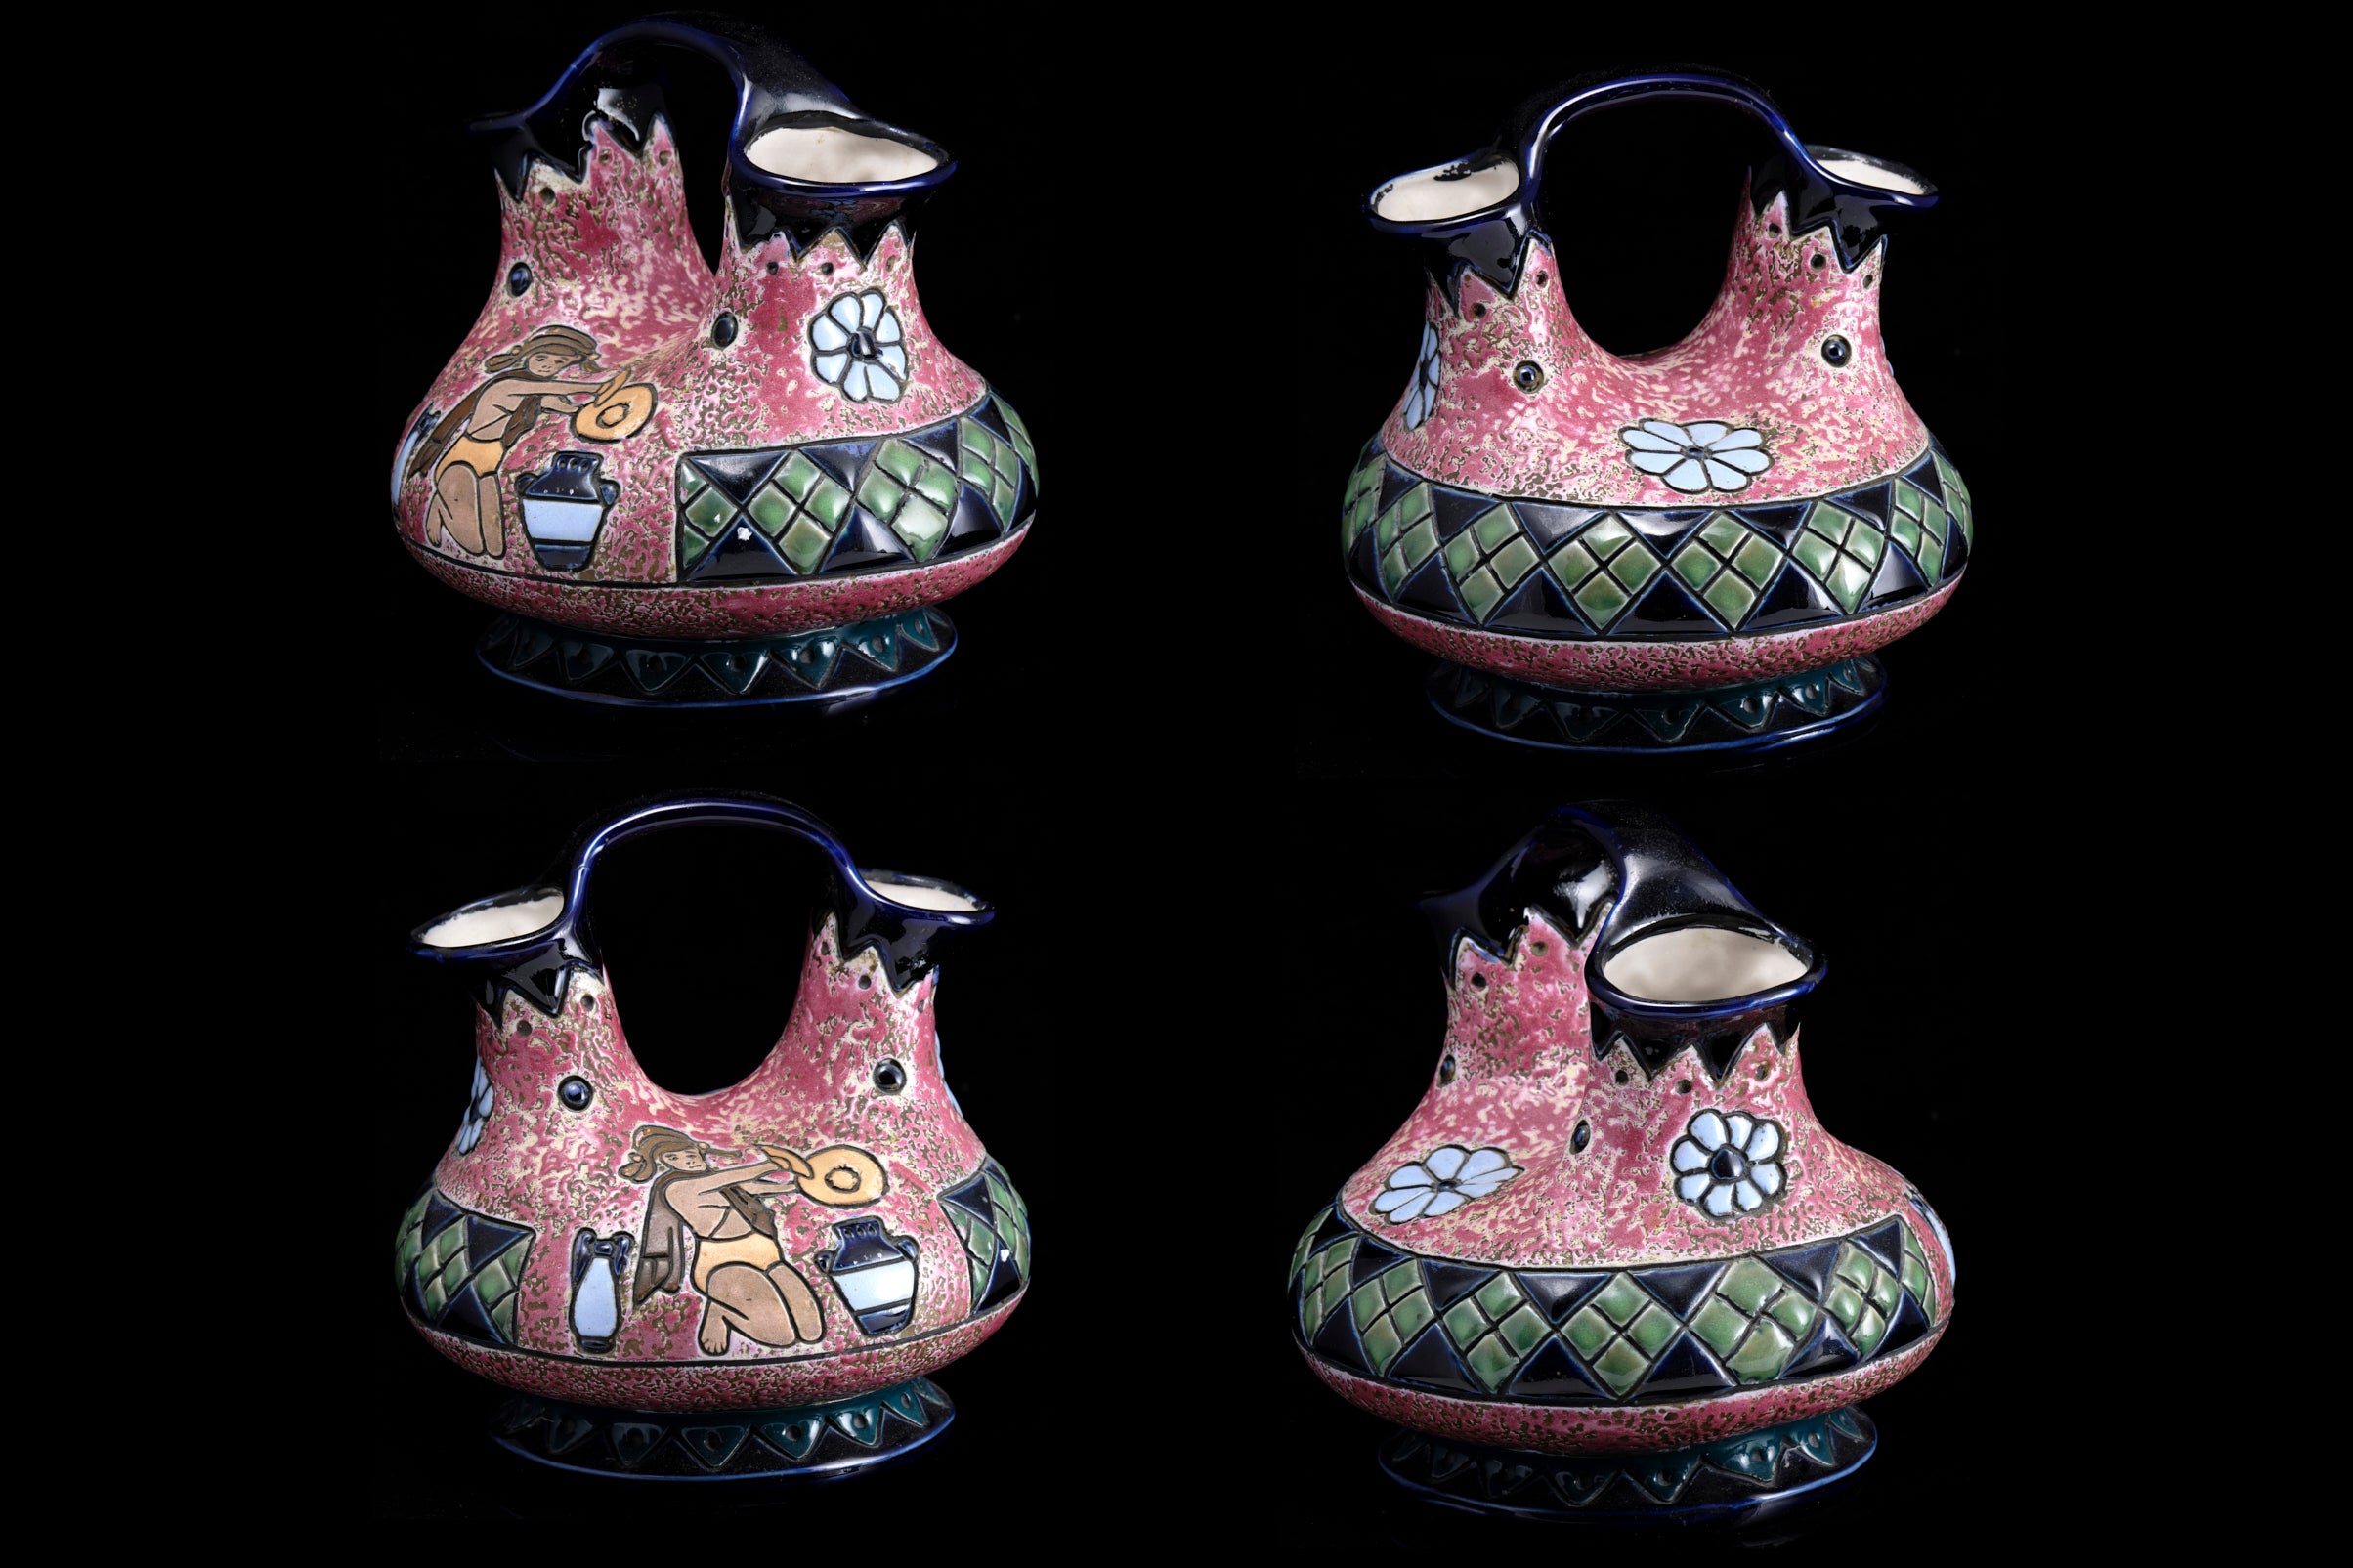 Czechoslovakian "Amphora" Pottery.